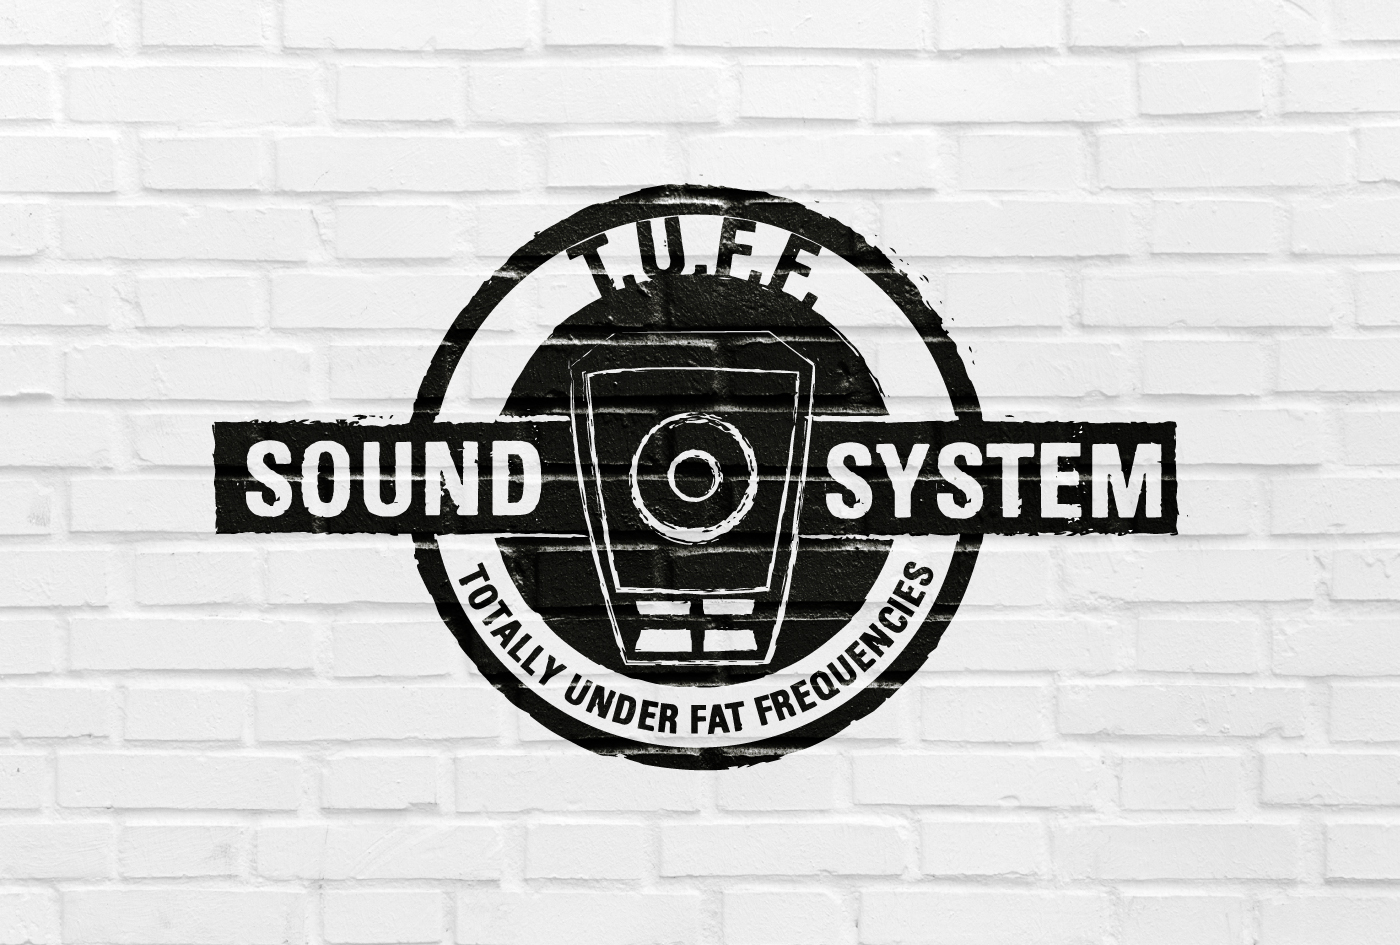 T.U.F.F. SOUND SYSTEM